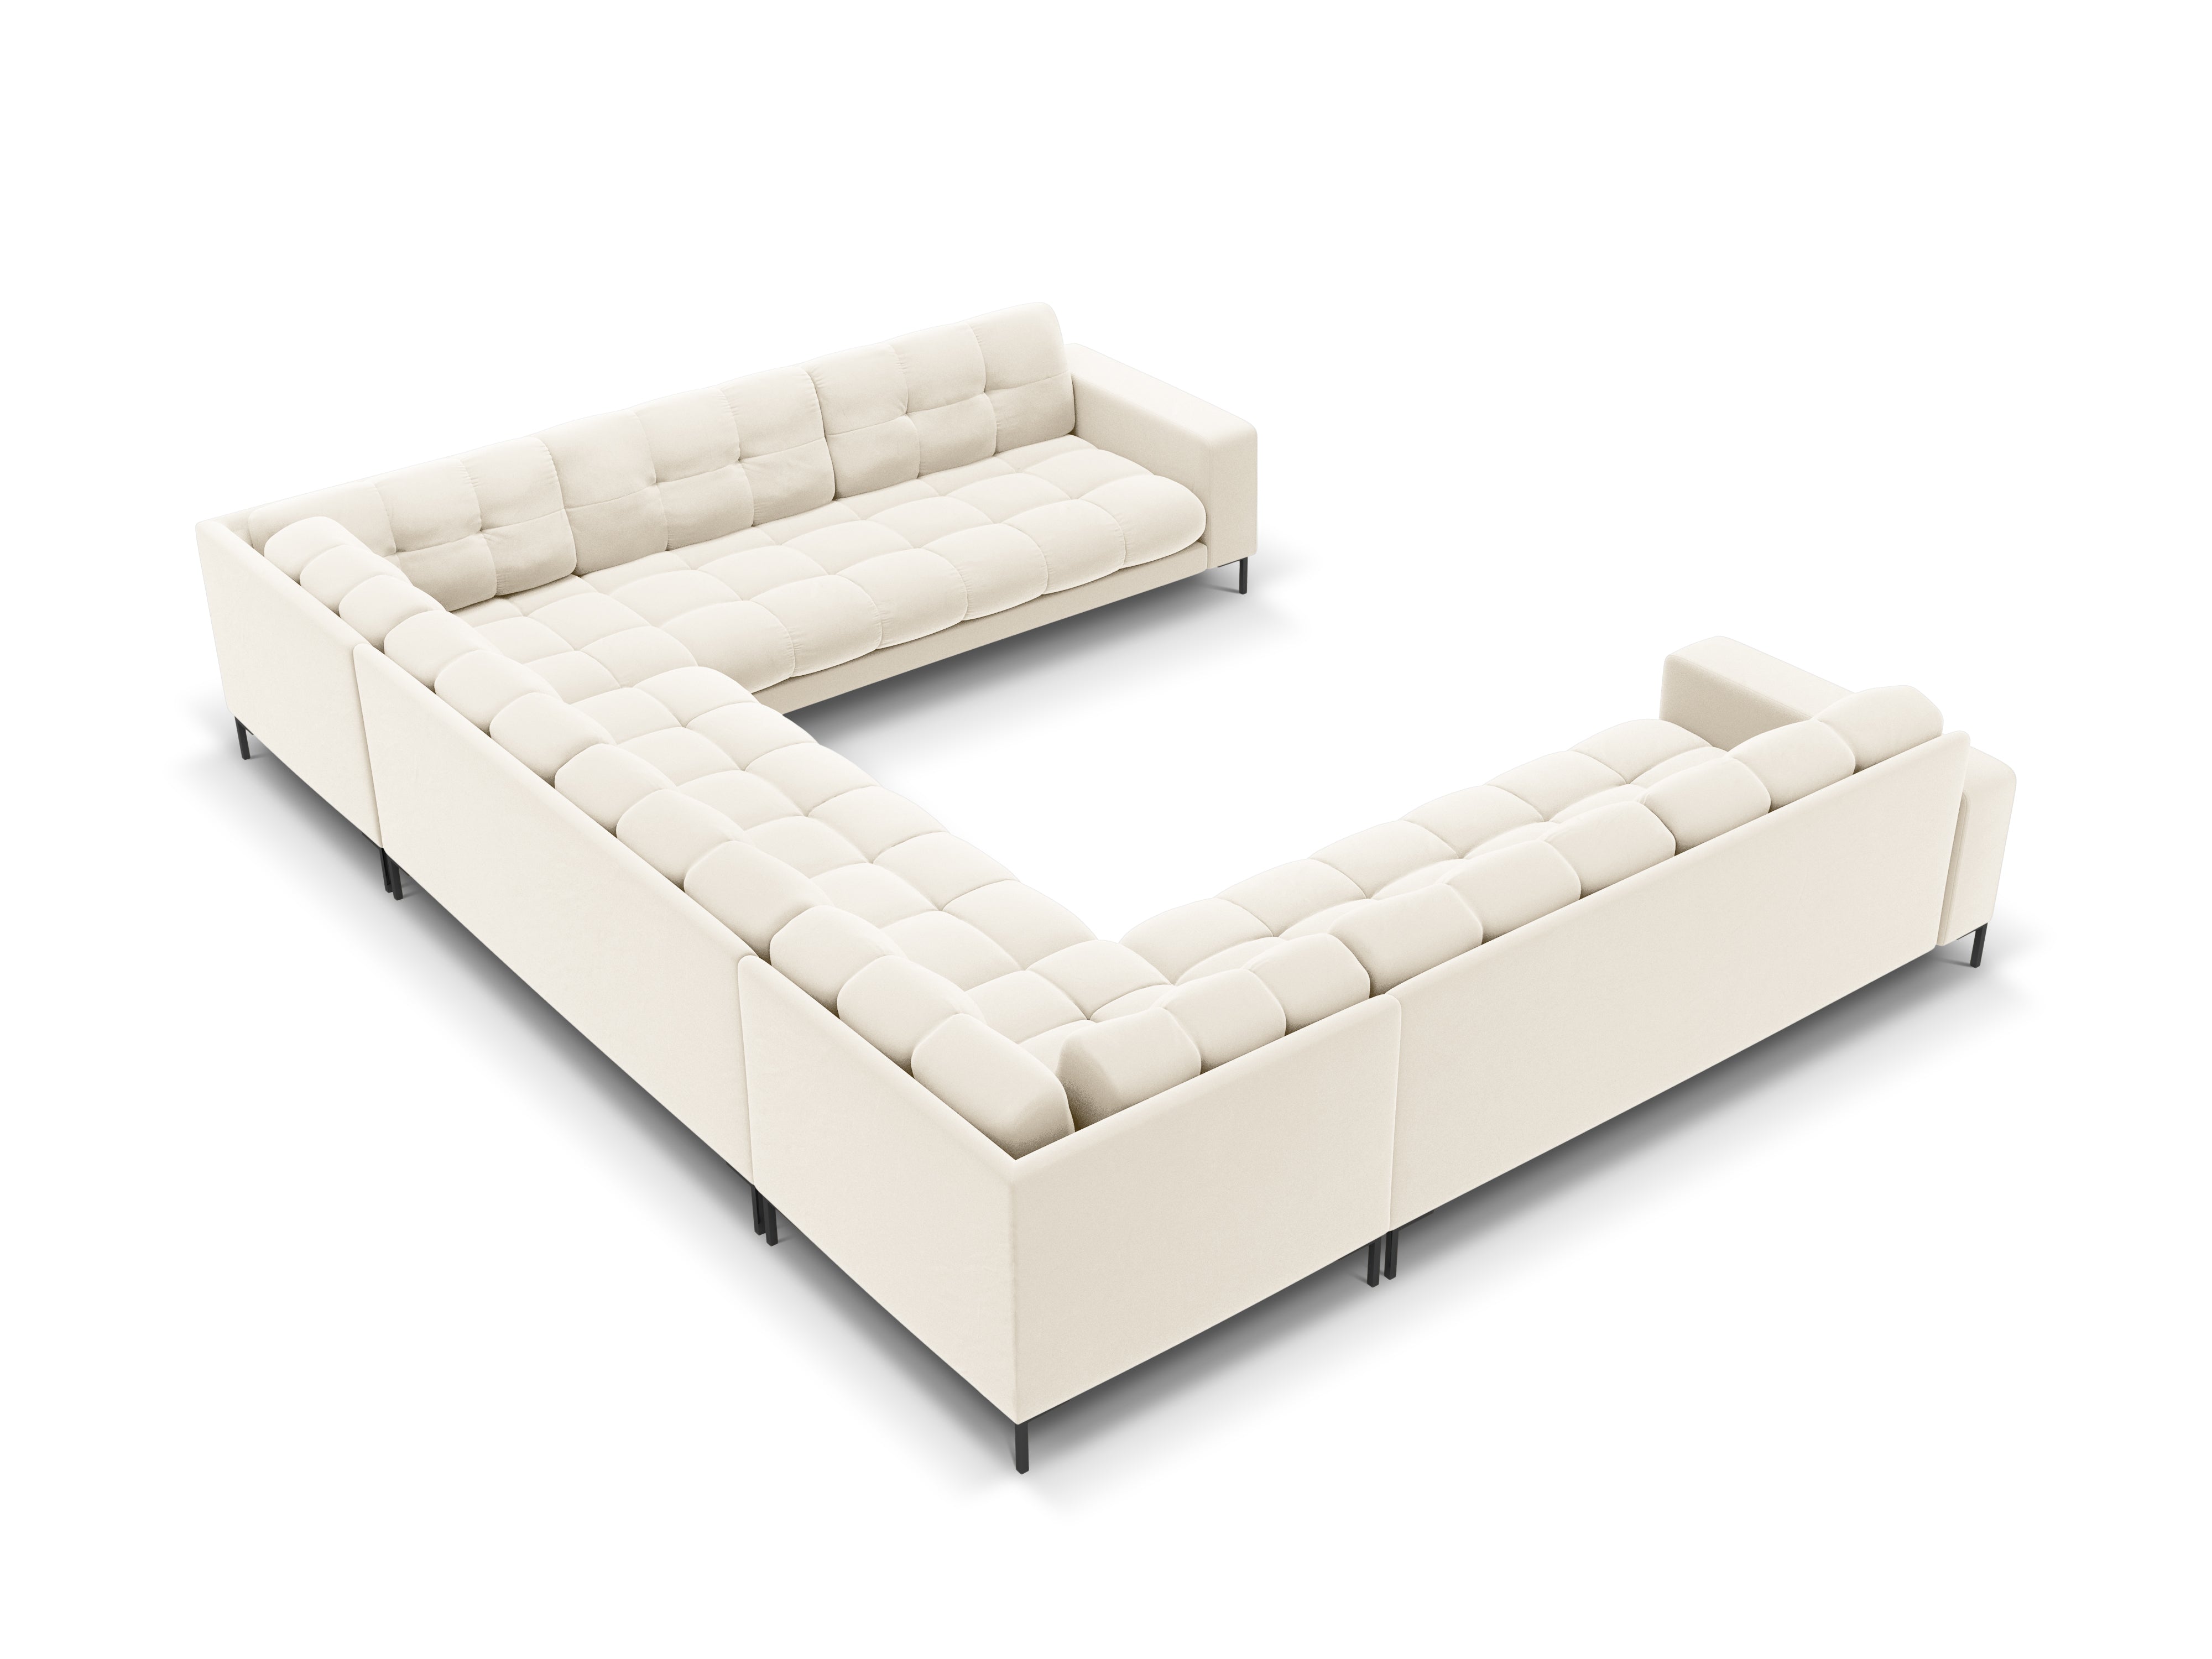 Panoramic velvet sofa 9-seater BALI light beige with black base